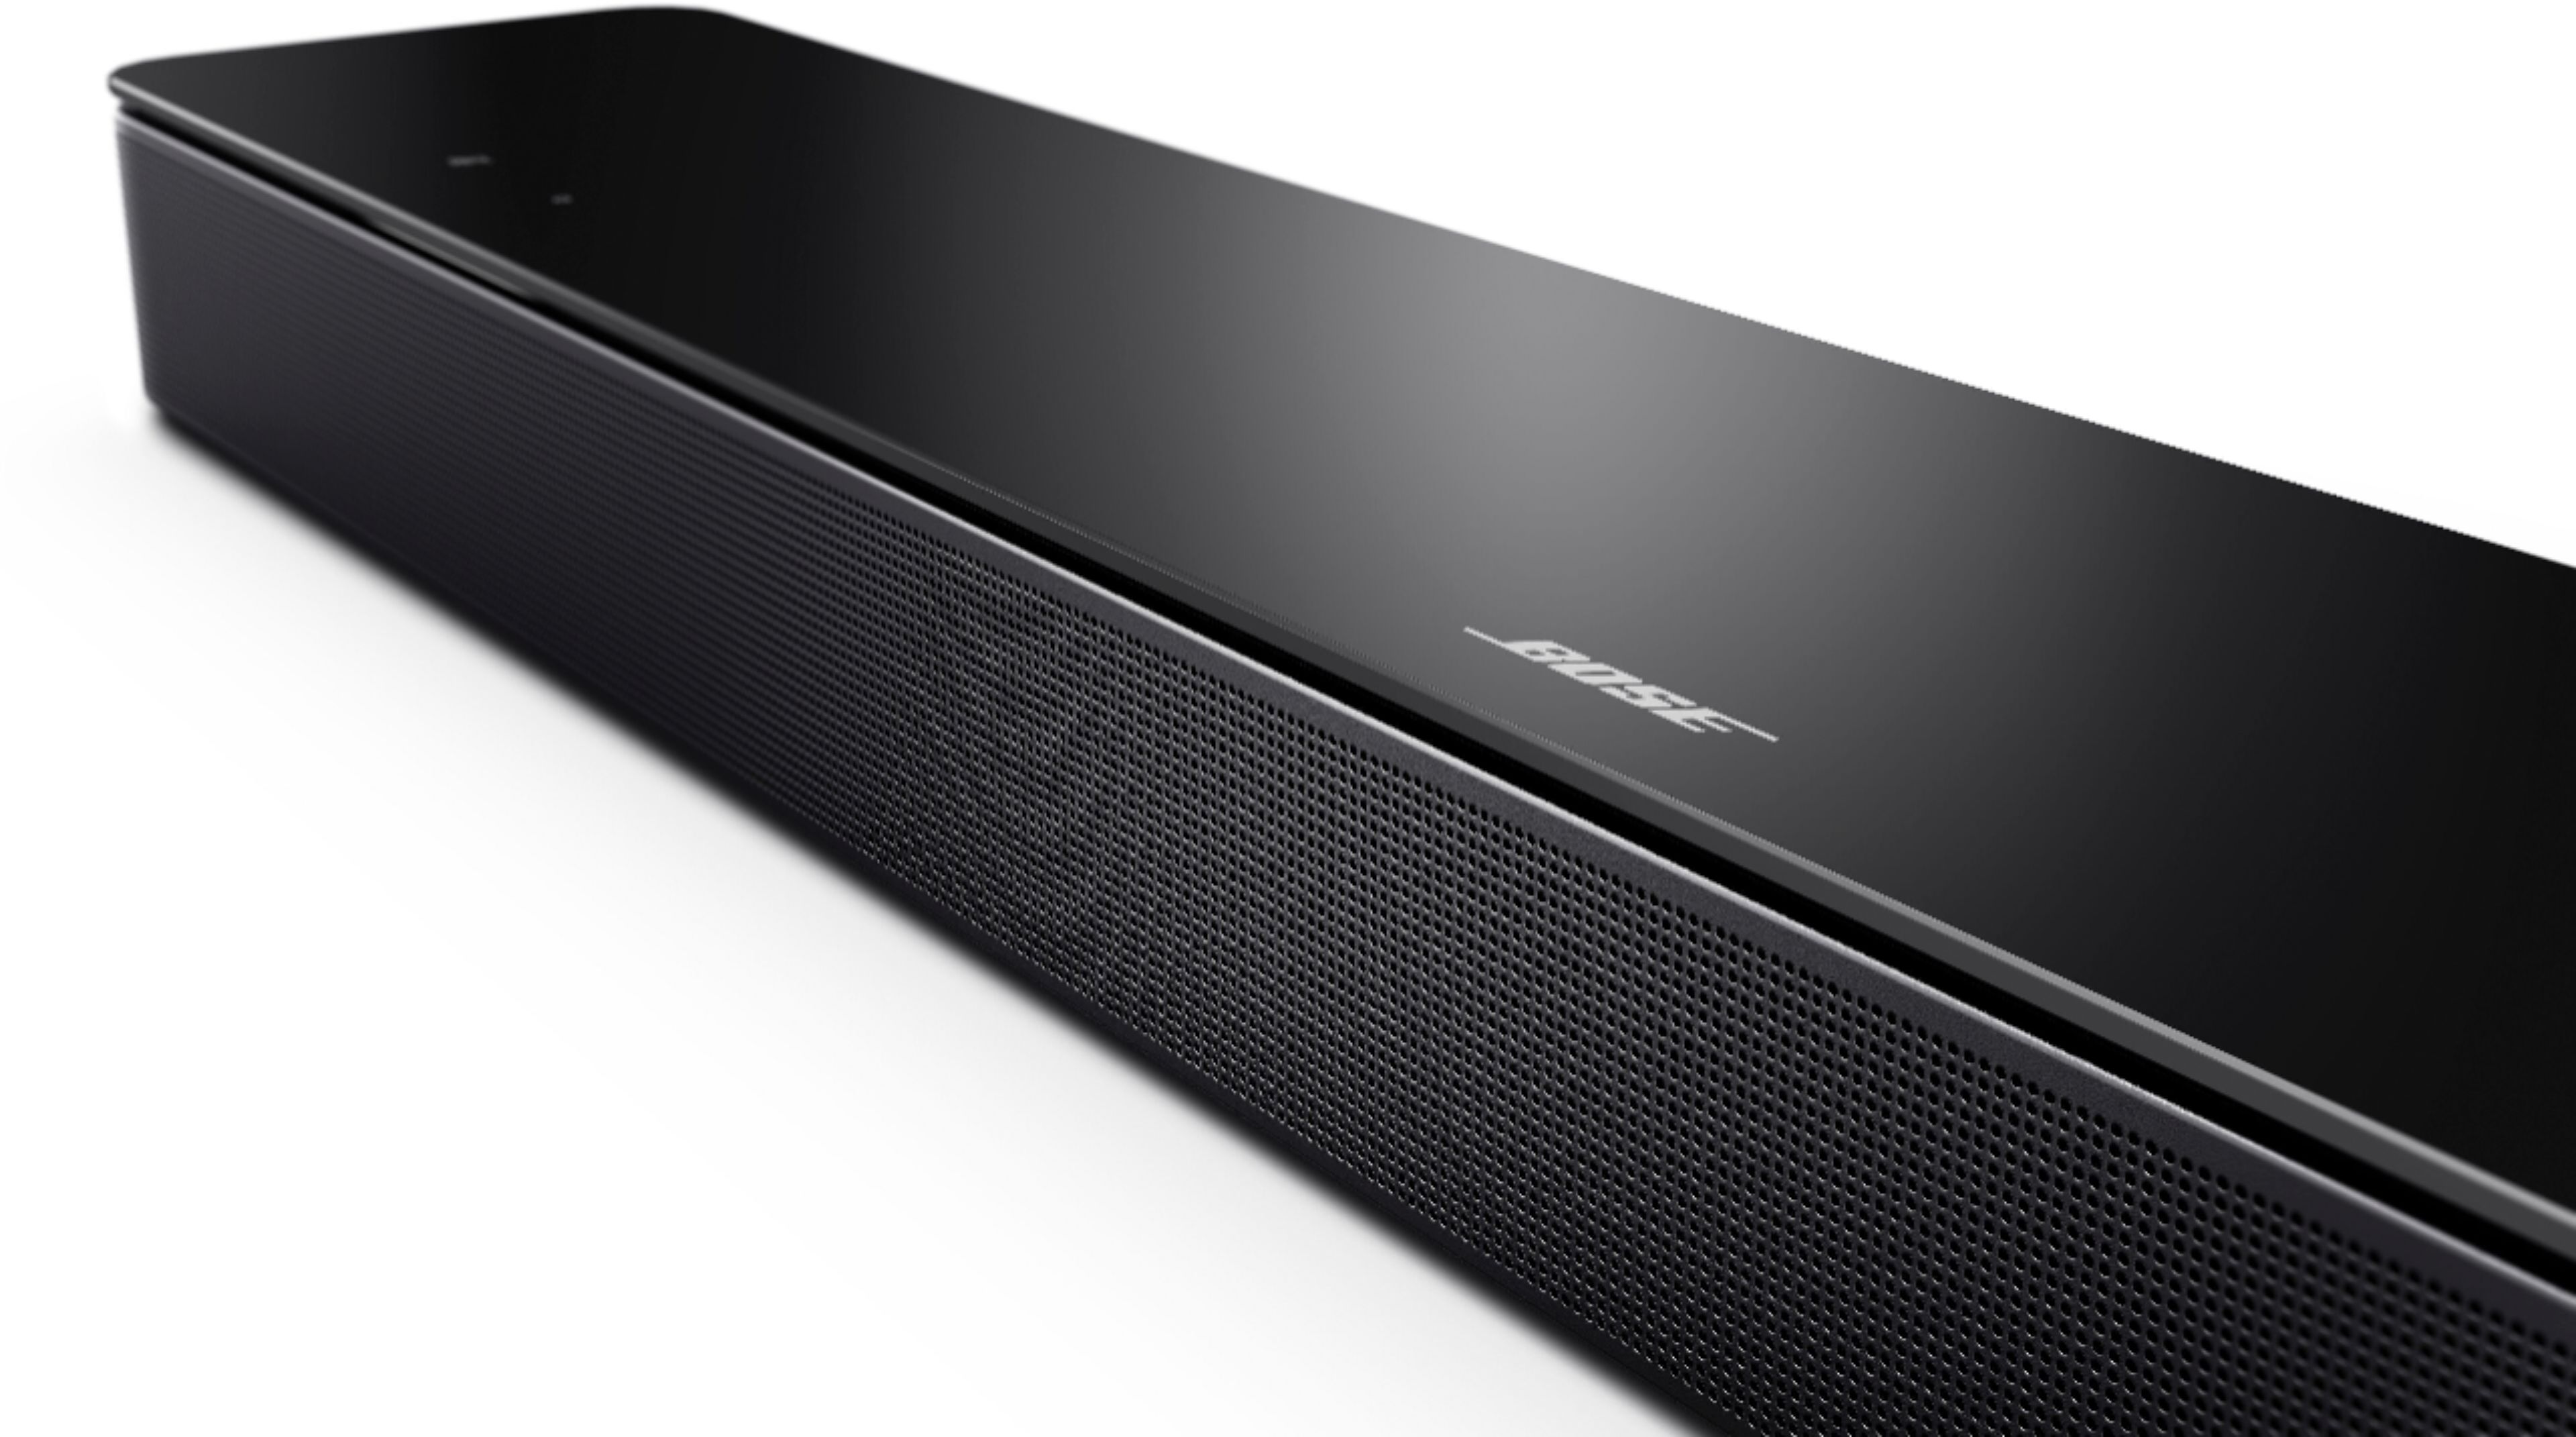 Bose Smart Soundbar 300 with Voice Assistant Black 843299-1100